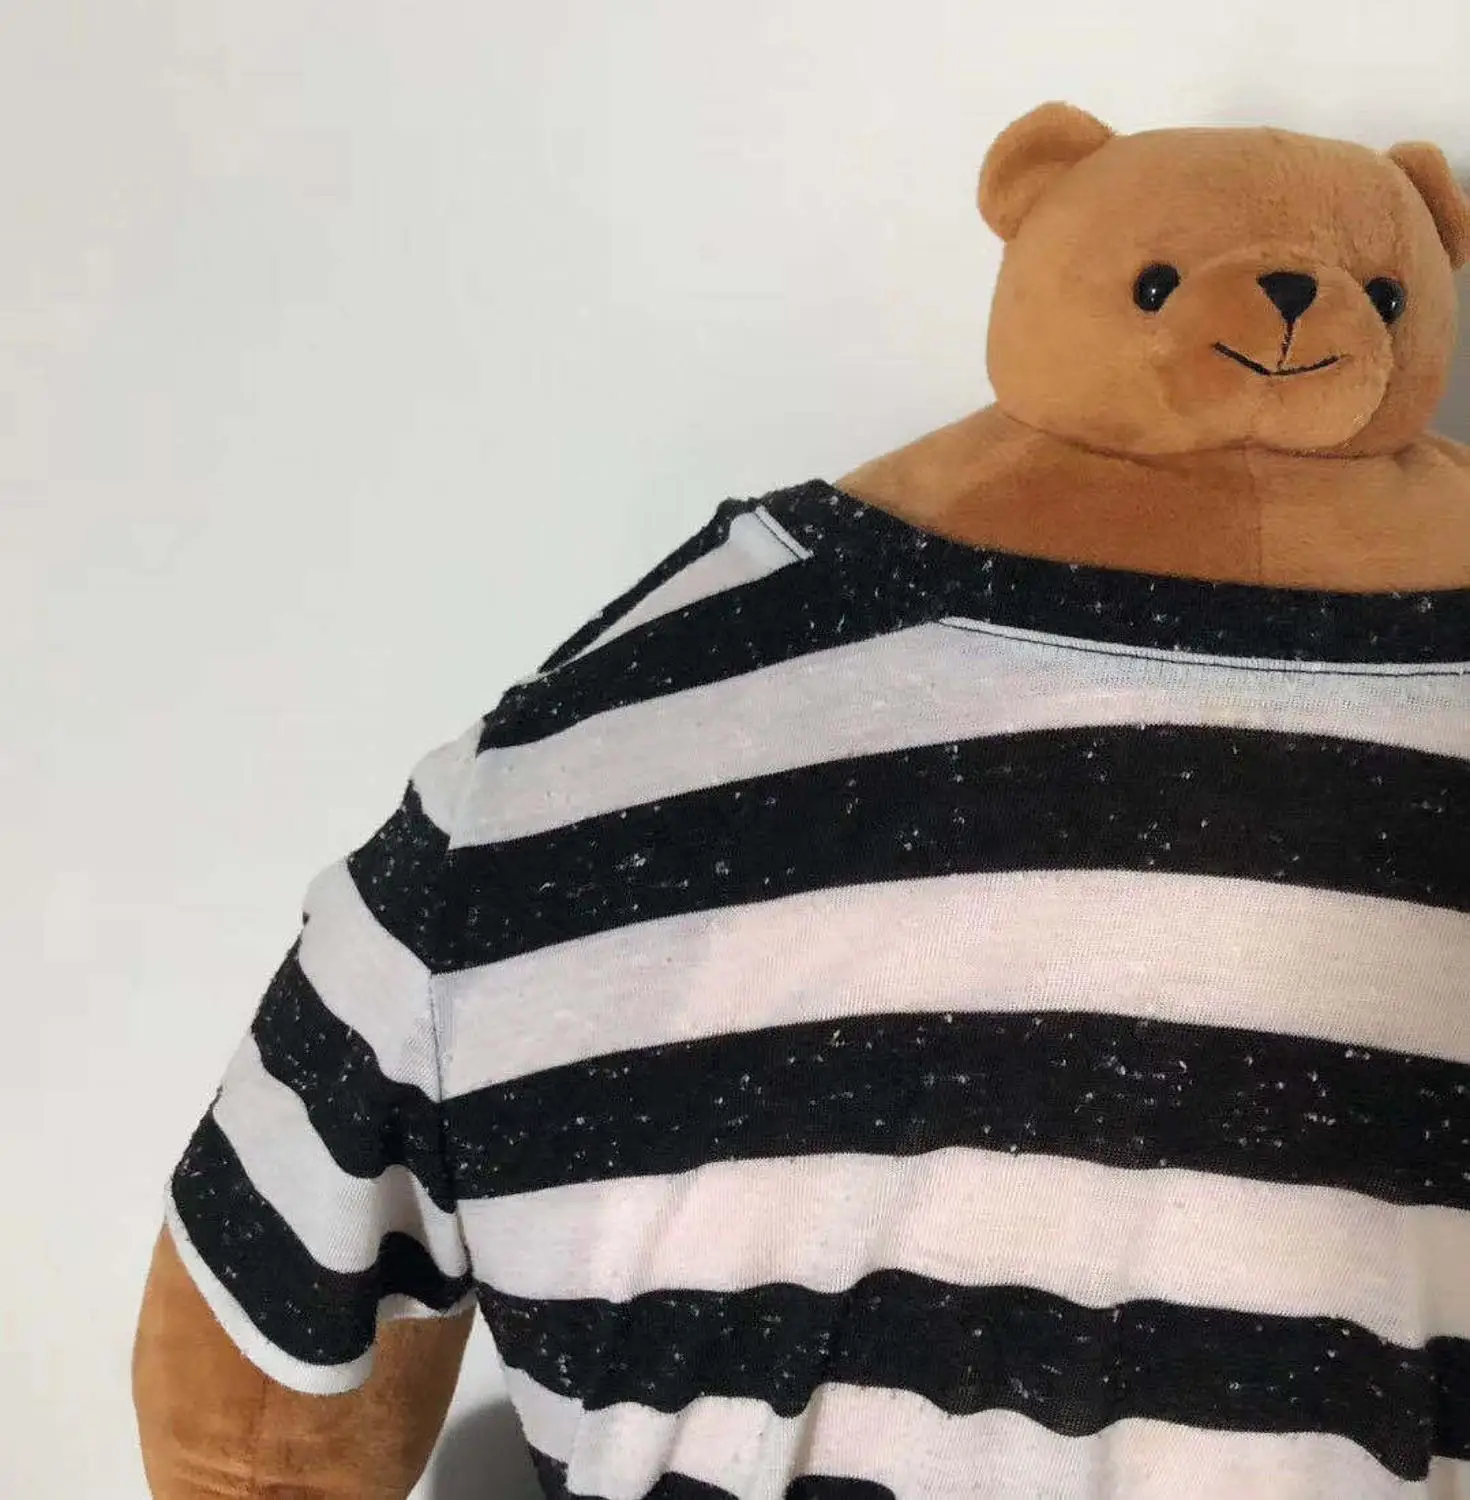 Ins-인기 판매 작은 머리 테디 베어 베개, 팬더/곰/나무 늘보 근육 몸 남자 친구 포옹 베개 쿠션 생일 선물